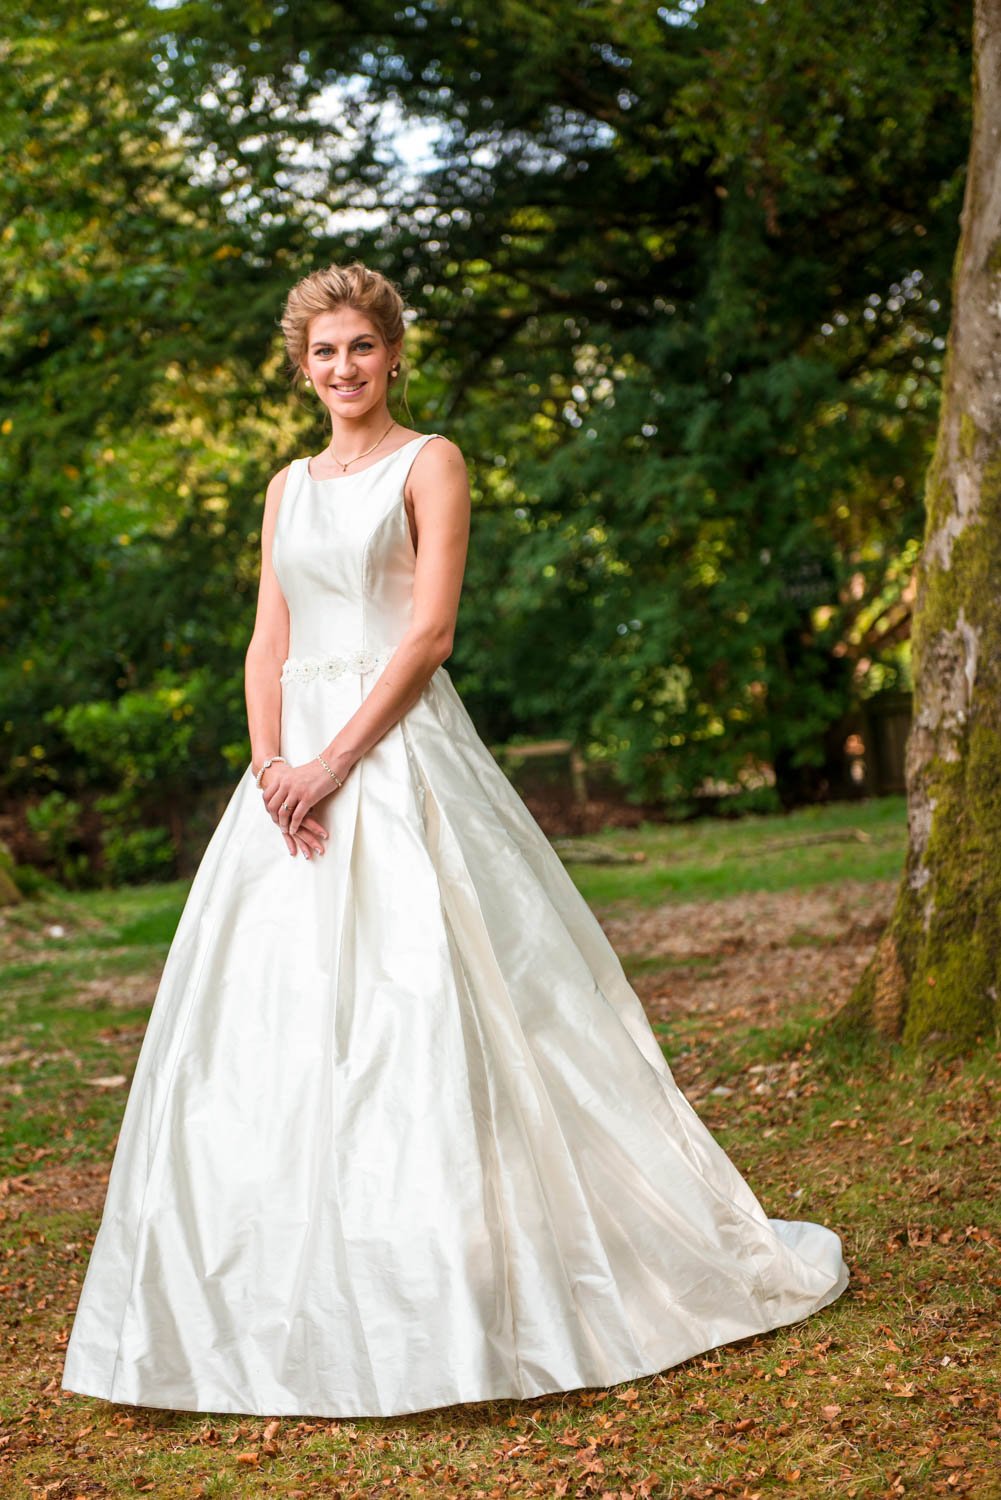 Brides-Wedding-Photographer-Loch-Lomond-9.jpg